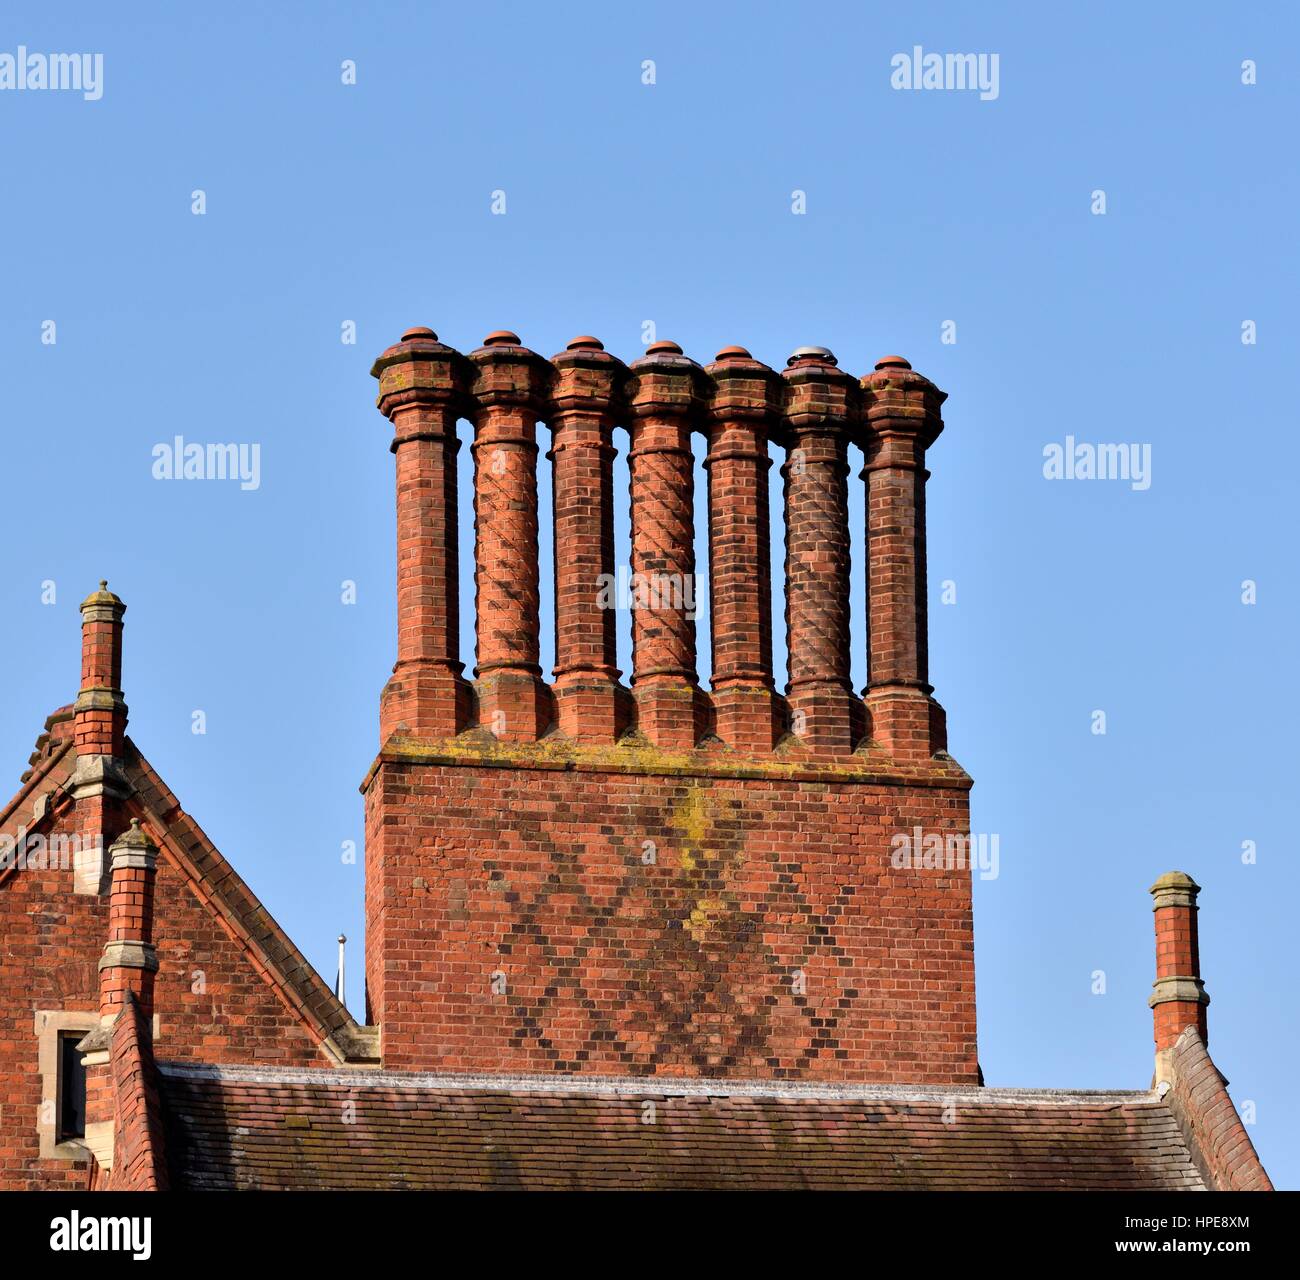 Gothic revival chimneys Stock Photo